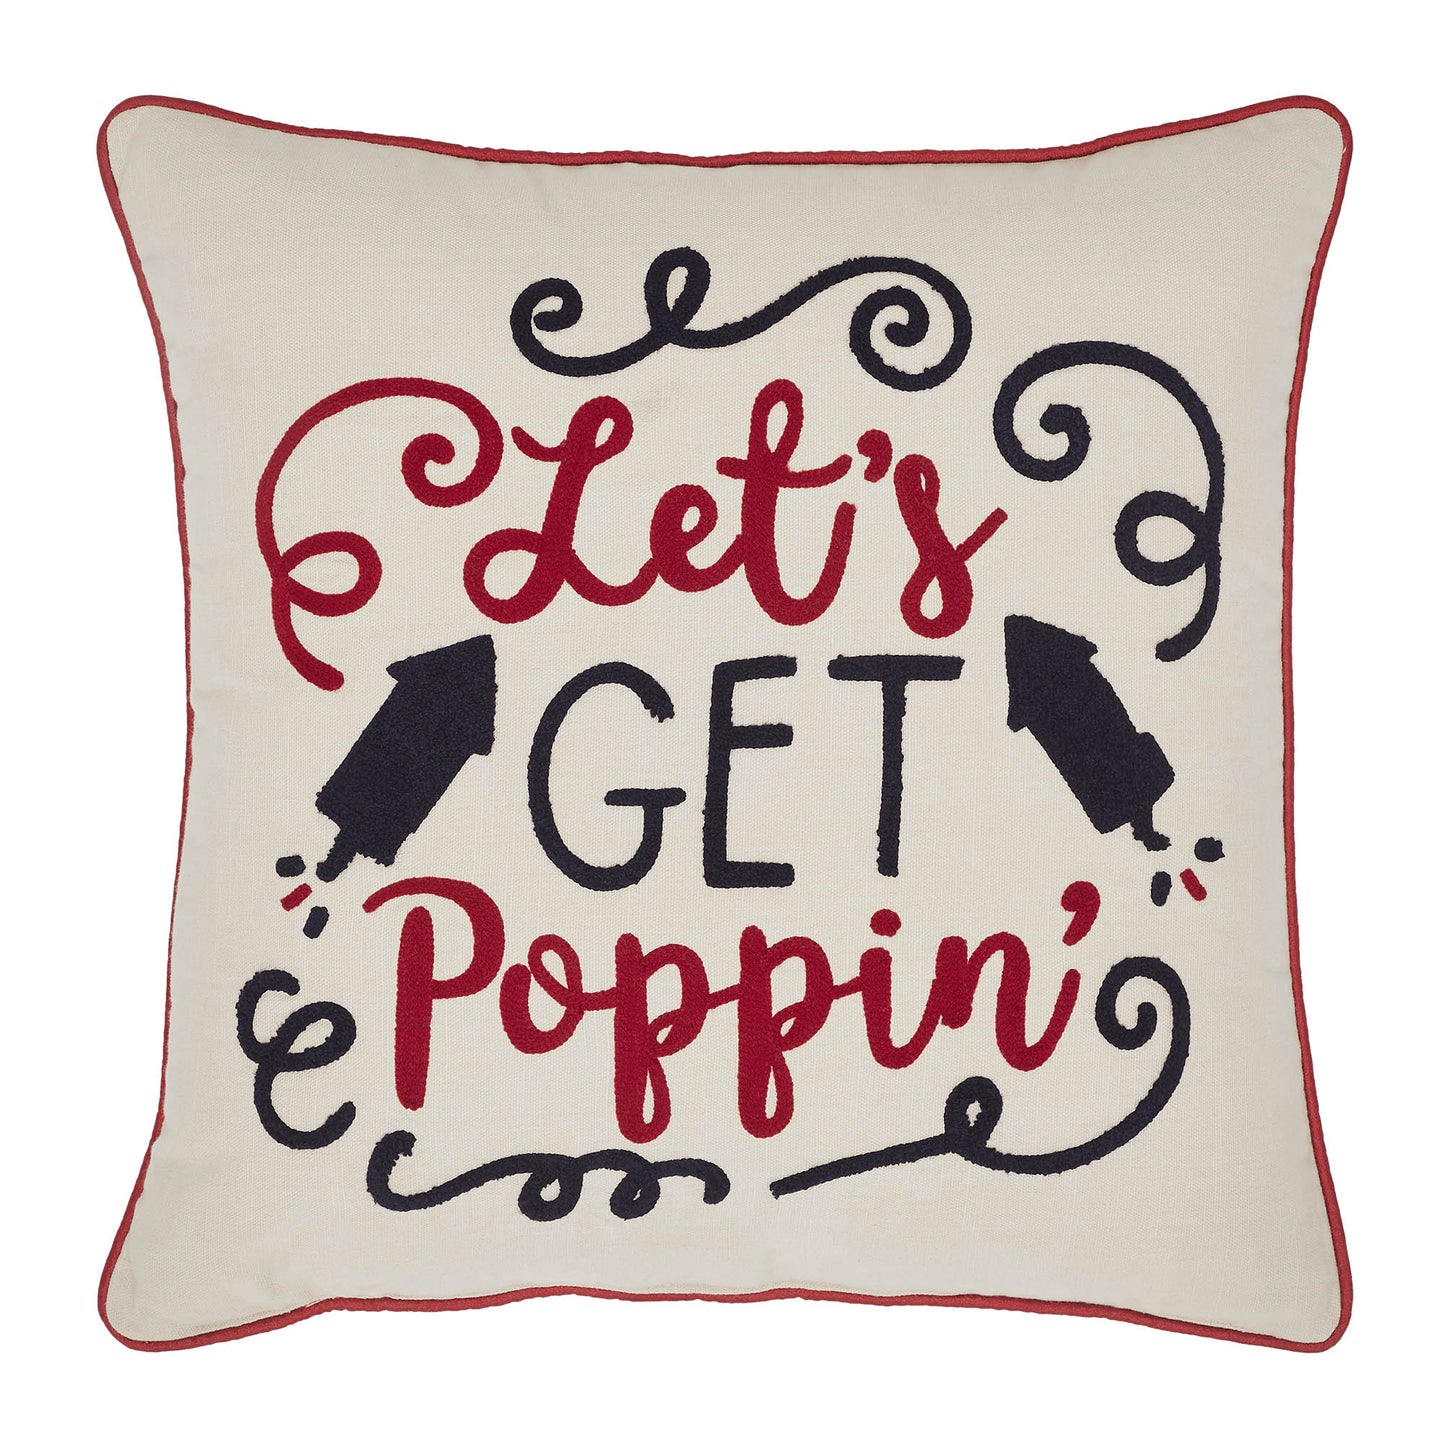 Let's Get Poppin Pillow 18x18 SpadezStore